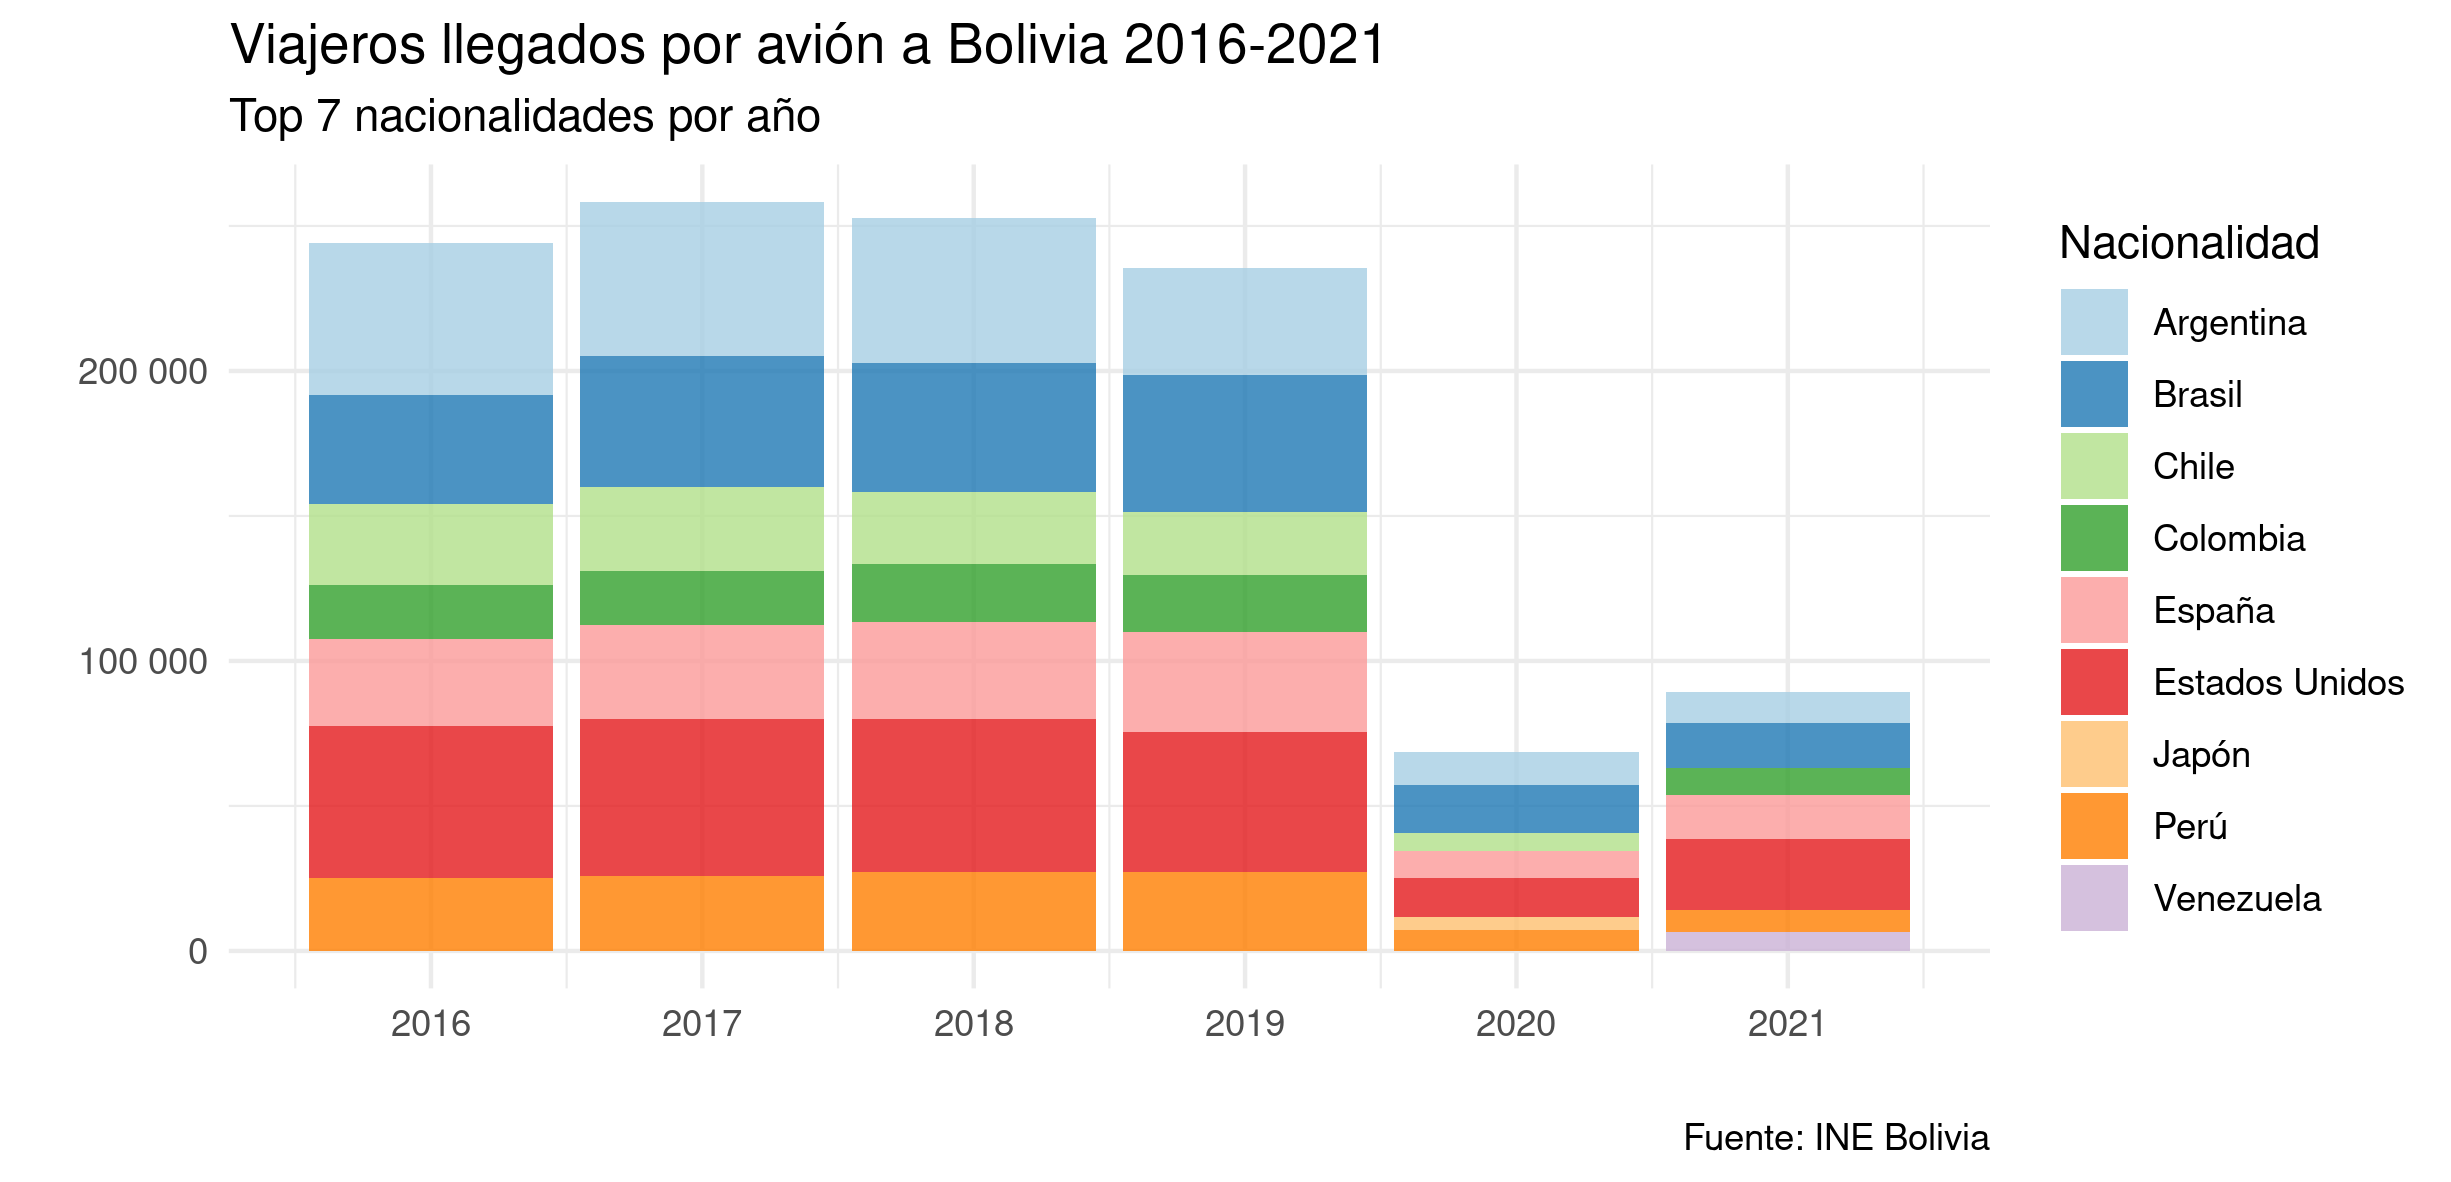 Cantidad de viajeros llegados por avión a Bolivia 2016-2021